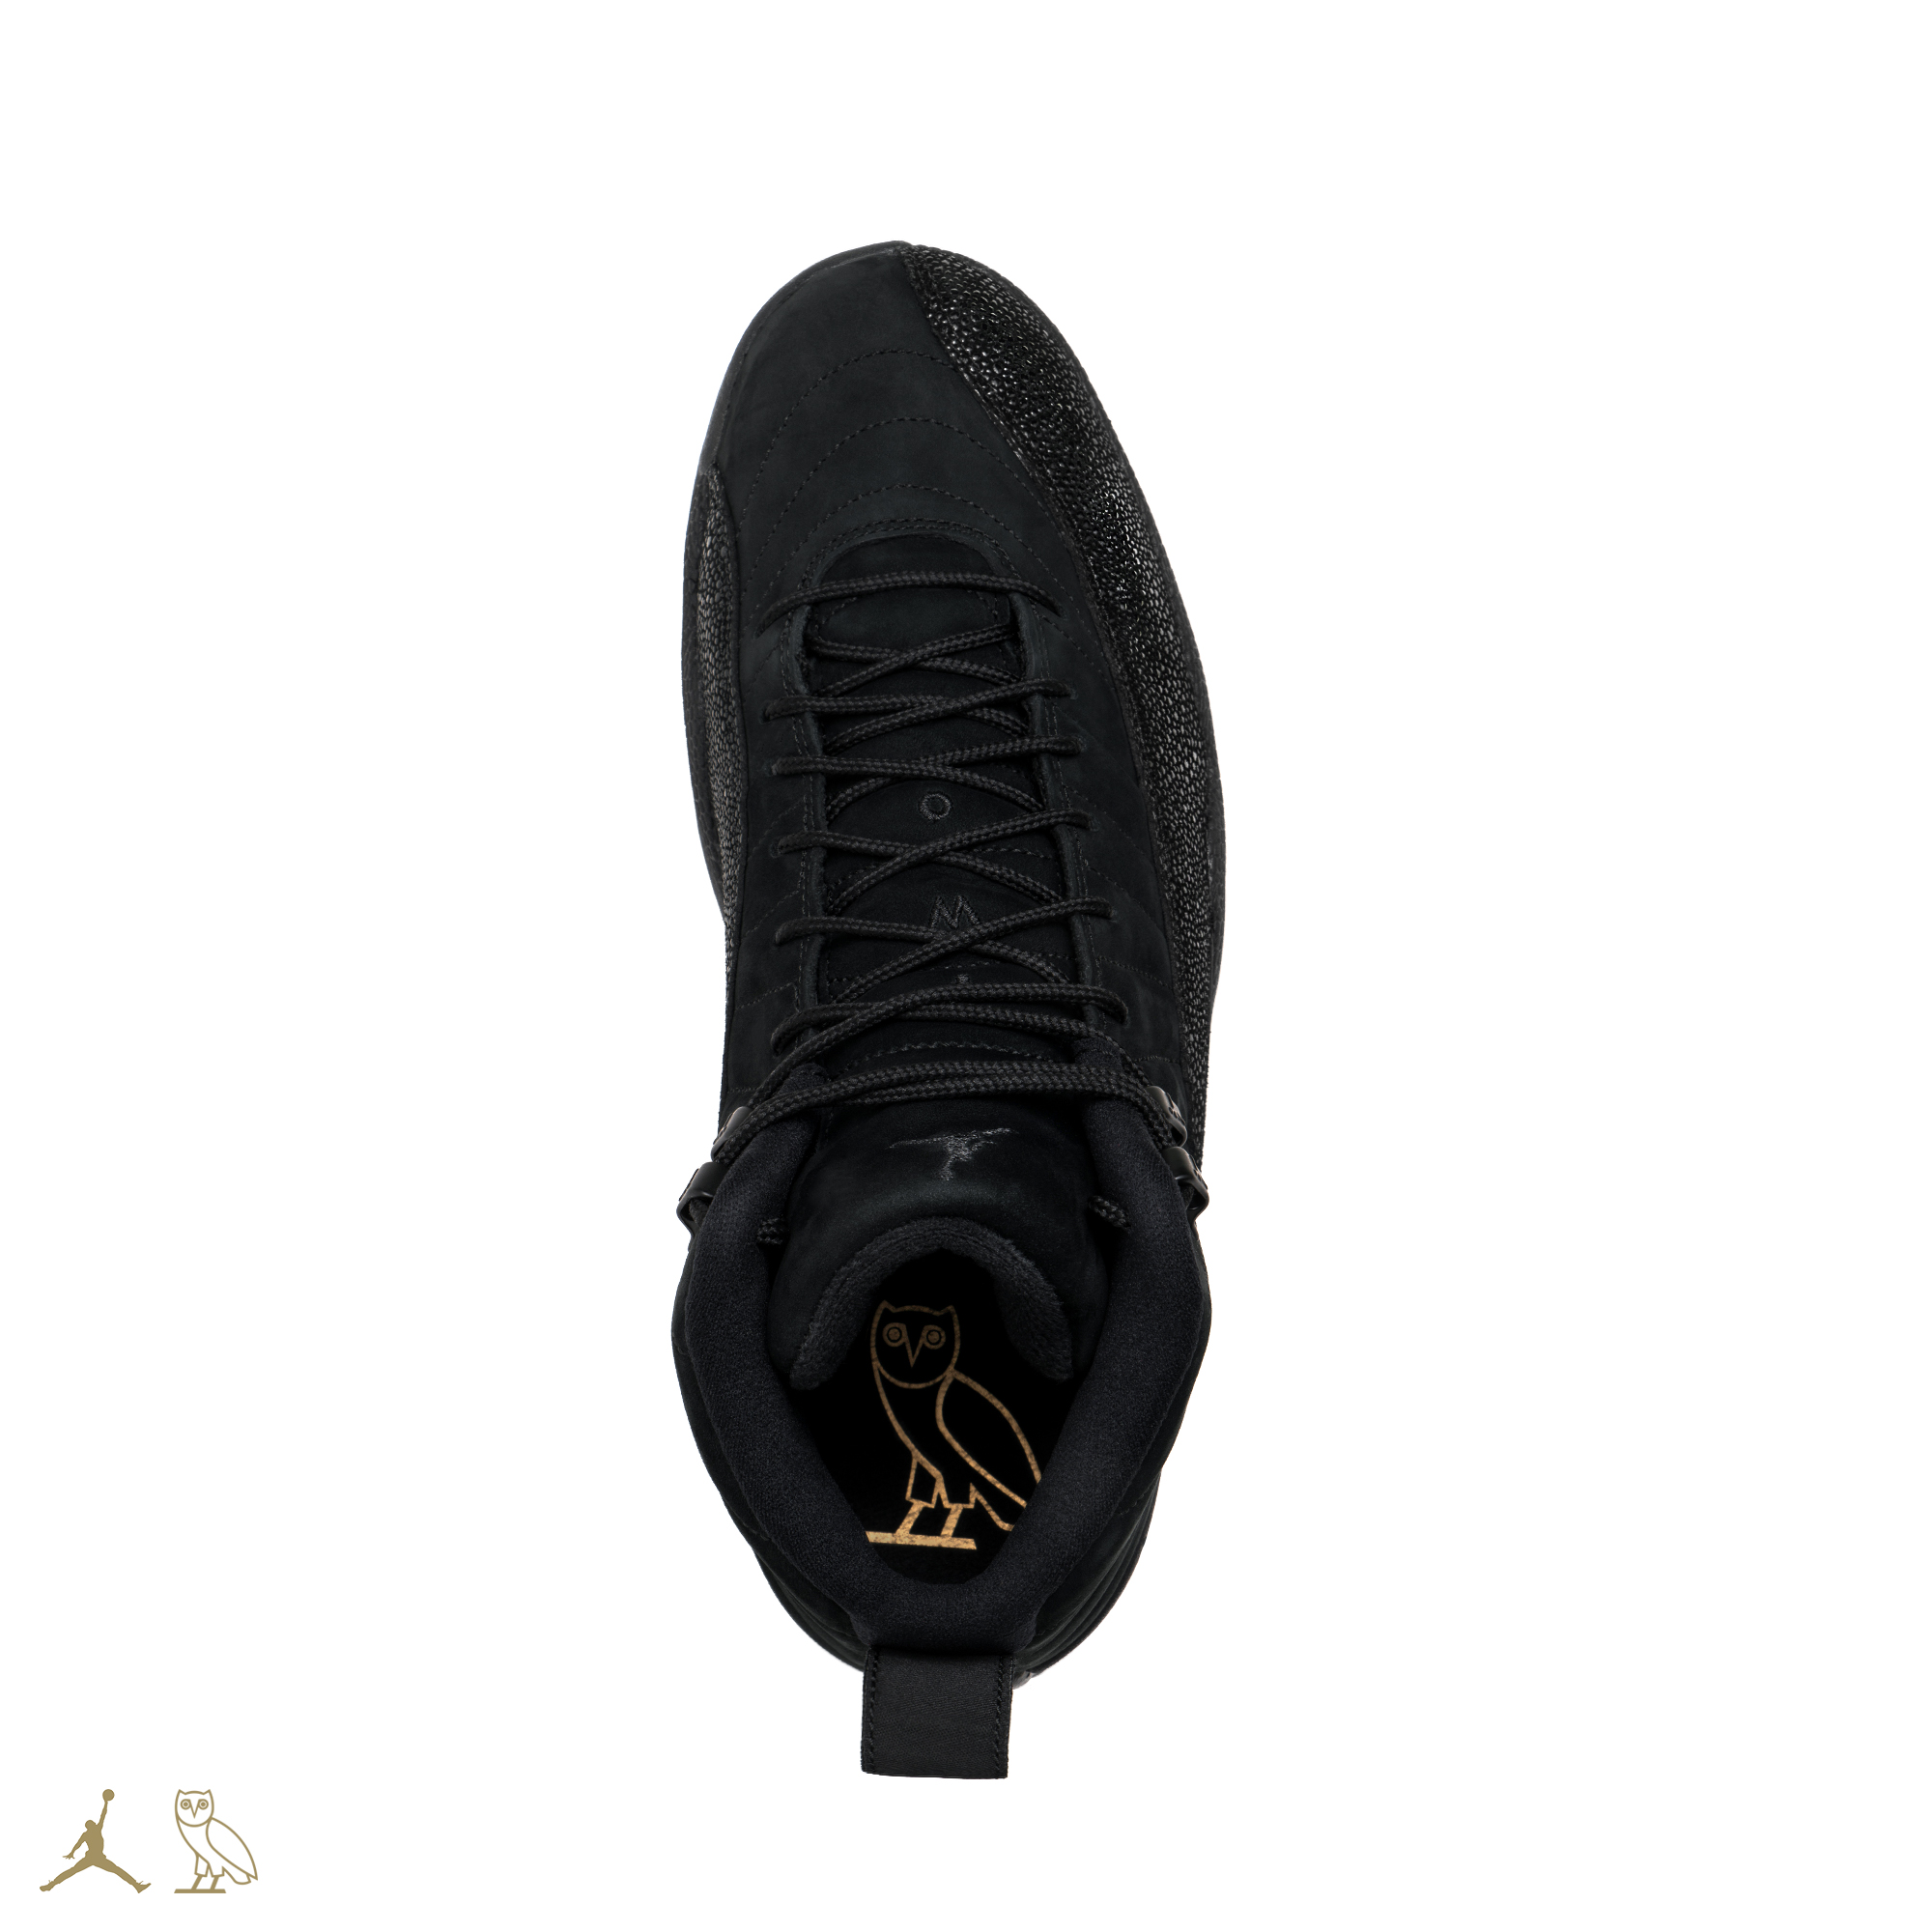 Camiseta negra de manga larga con estampado gráfico Jordan AJ6 de Nike